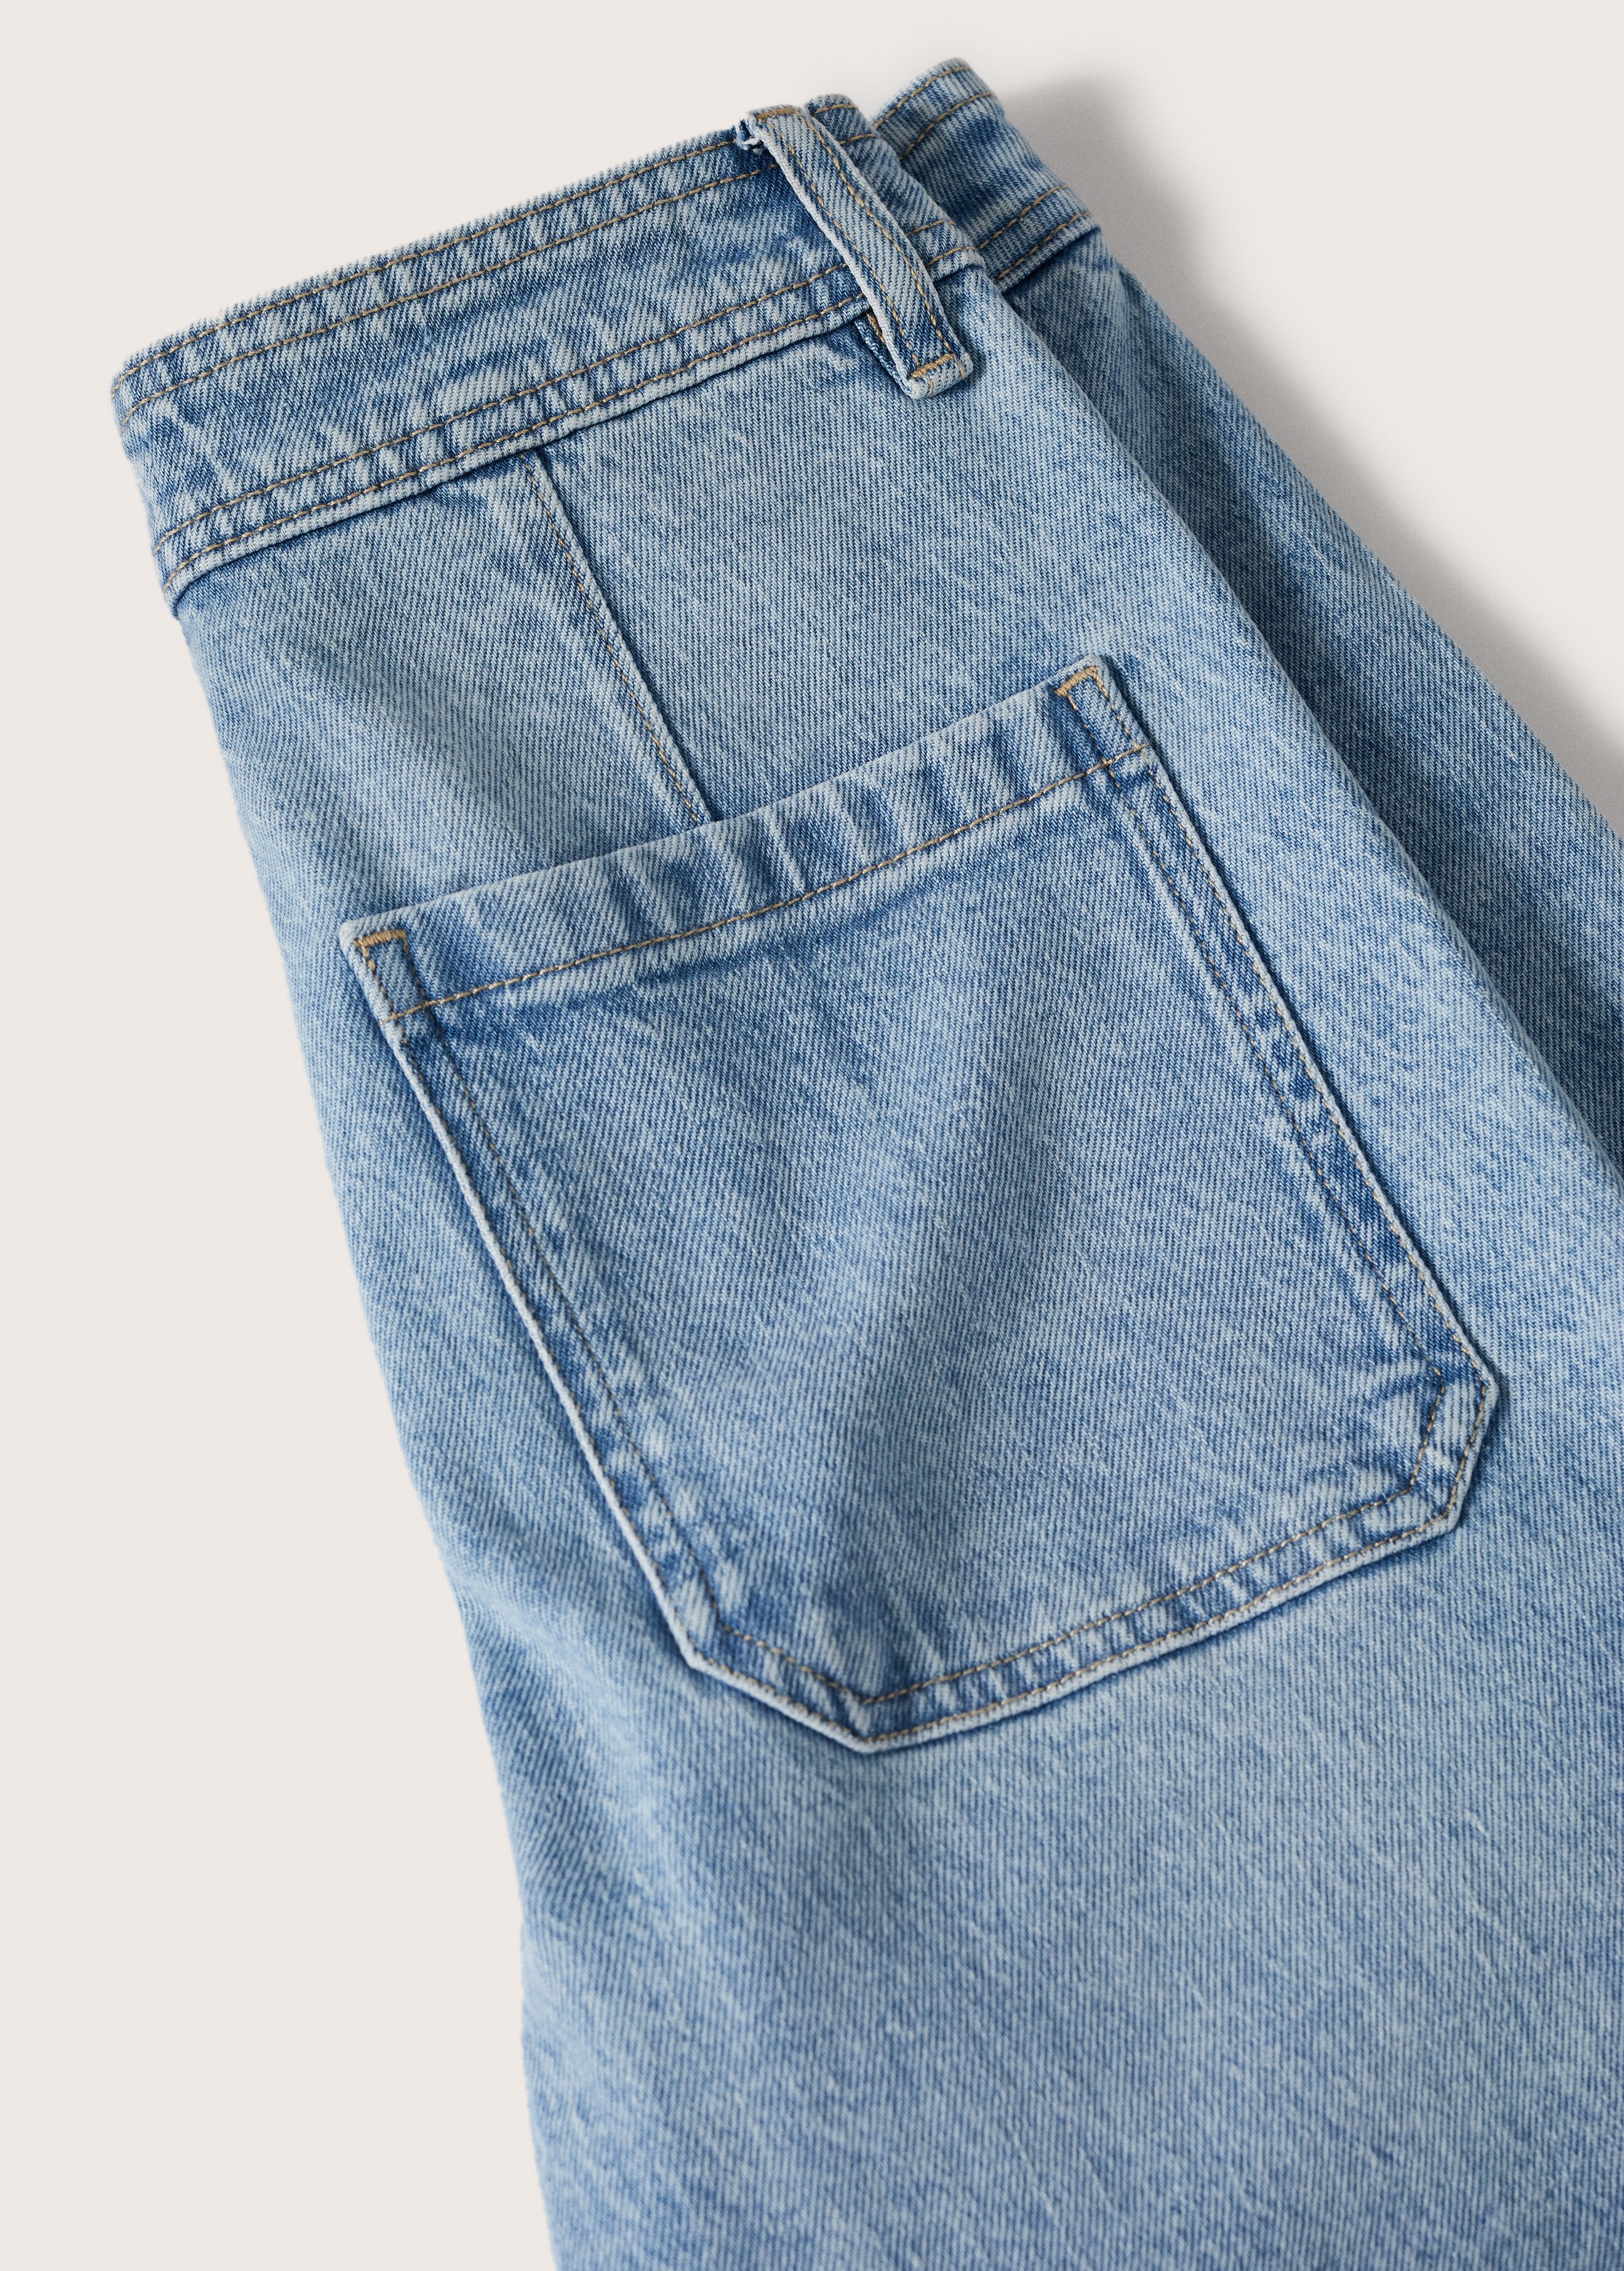 Culotte-Jeans mit hohem Bund - Detail des Artikels 8